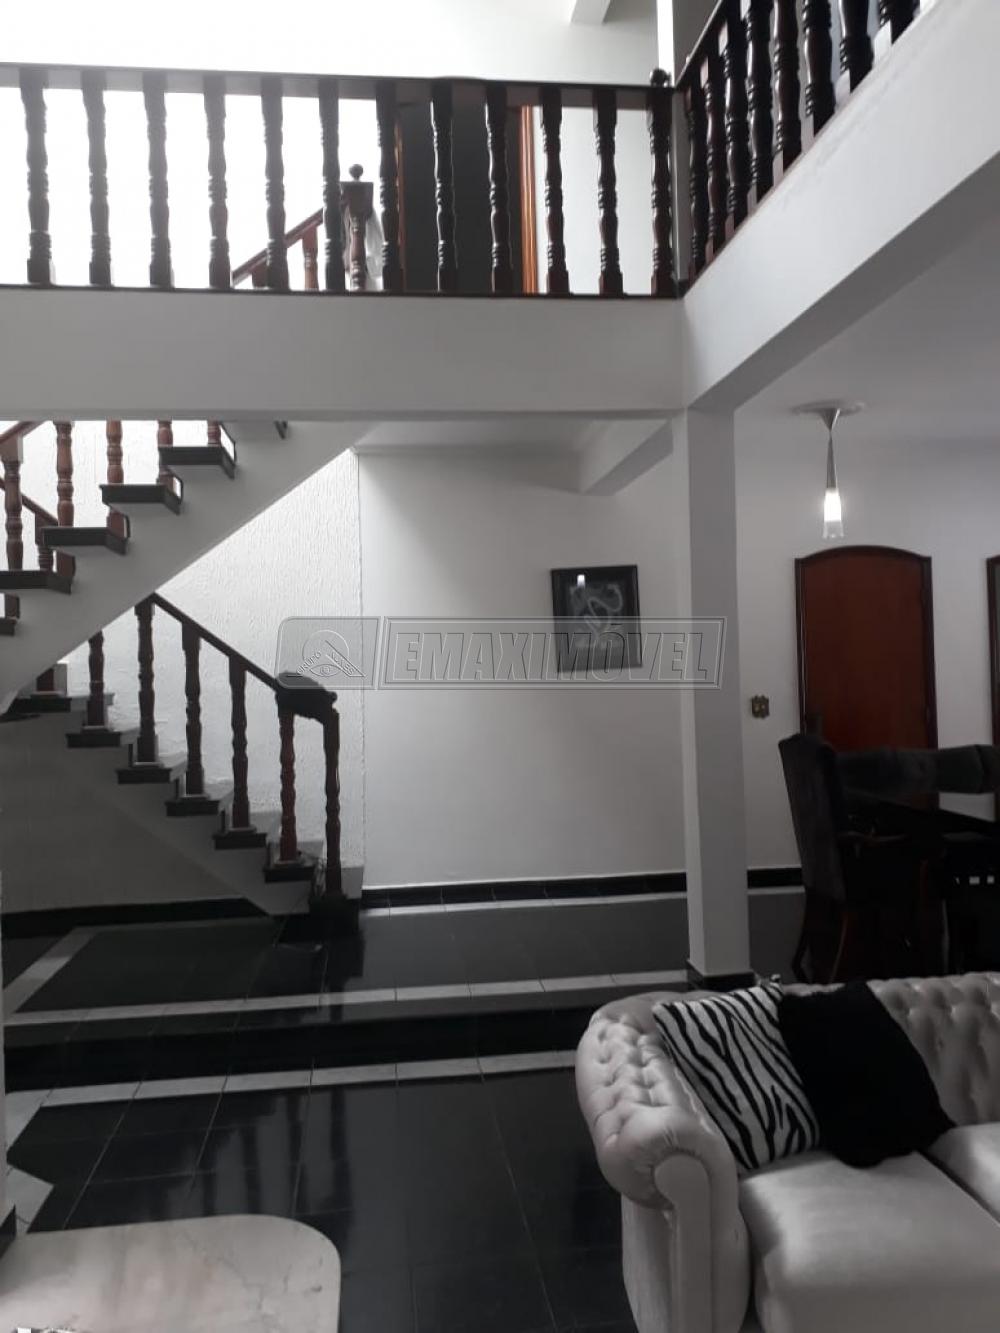 Comprar Casa / em Condomínios em Sorocaba R$ 1.600.000,00 - Foto 14